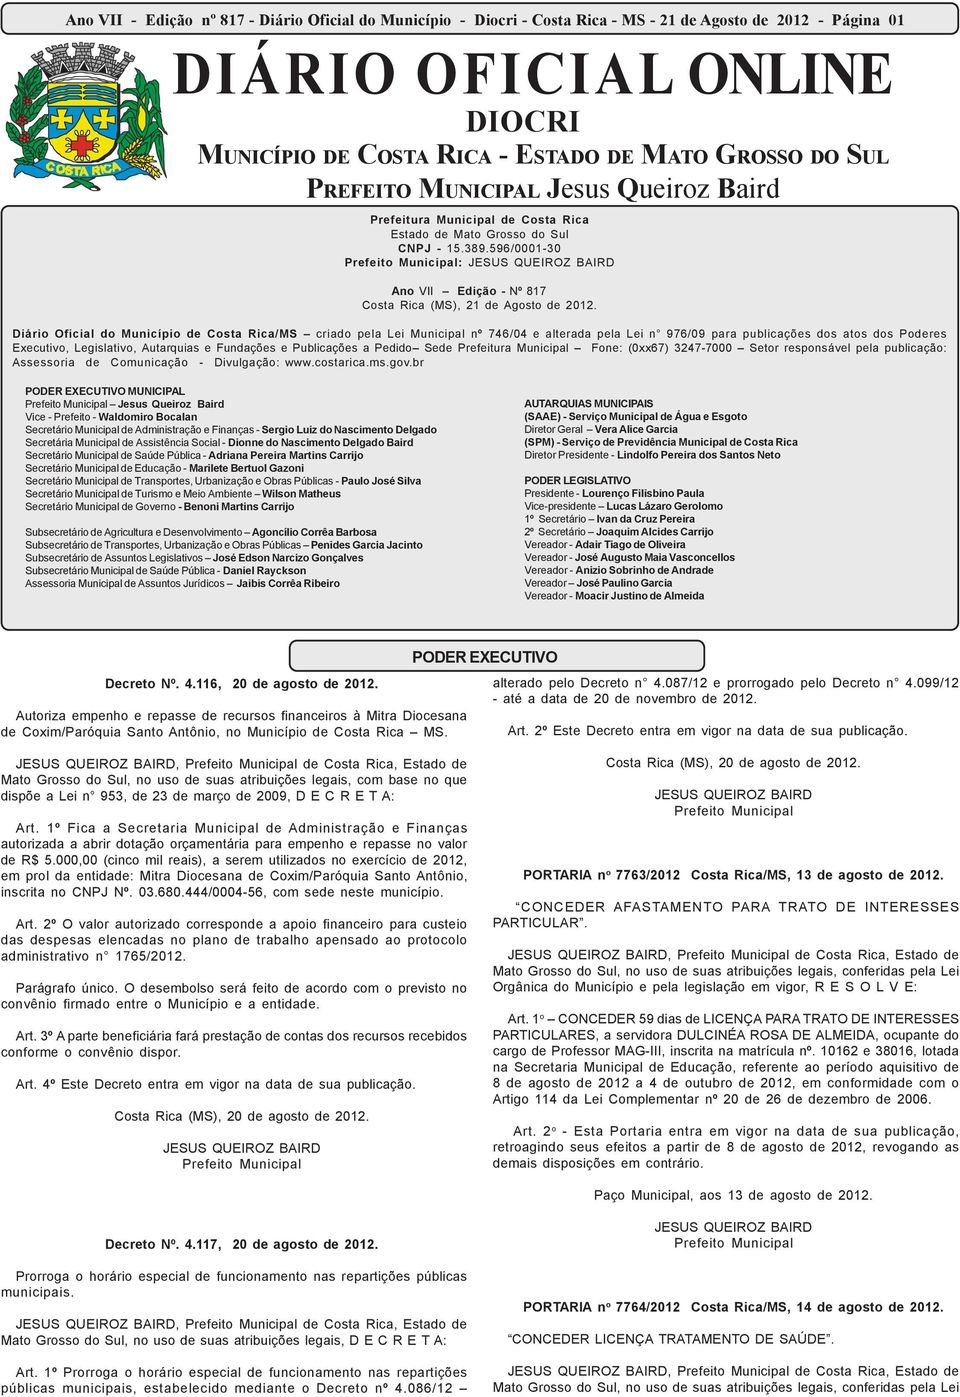 Diário Oficial do Município de Costa Rica/MS criado pela Lei Municipal nº 746/04 e alterada pela Lei n 976/09 para publicações dos atos dos Poderes Executivo, Legislativo, Autarquias e Fundações e